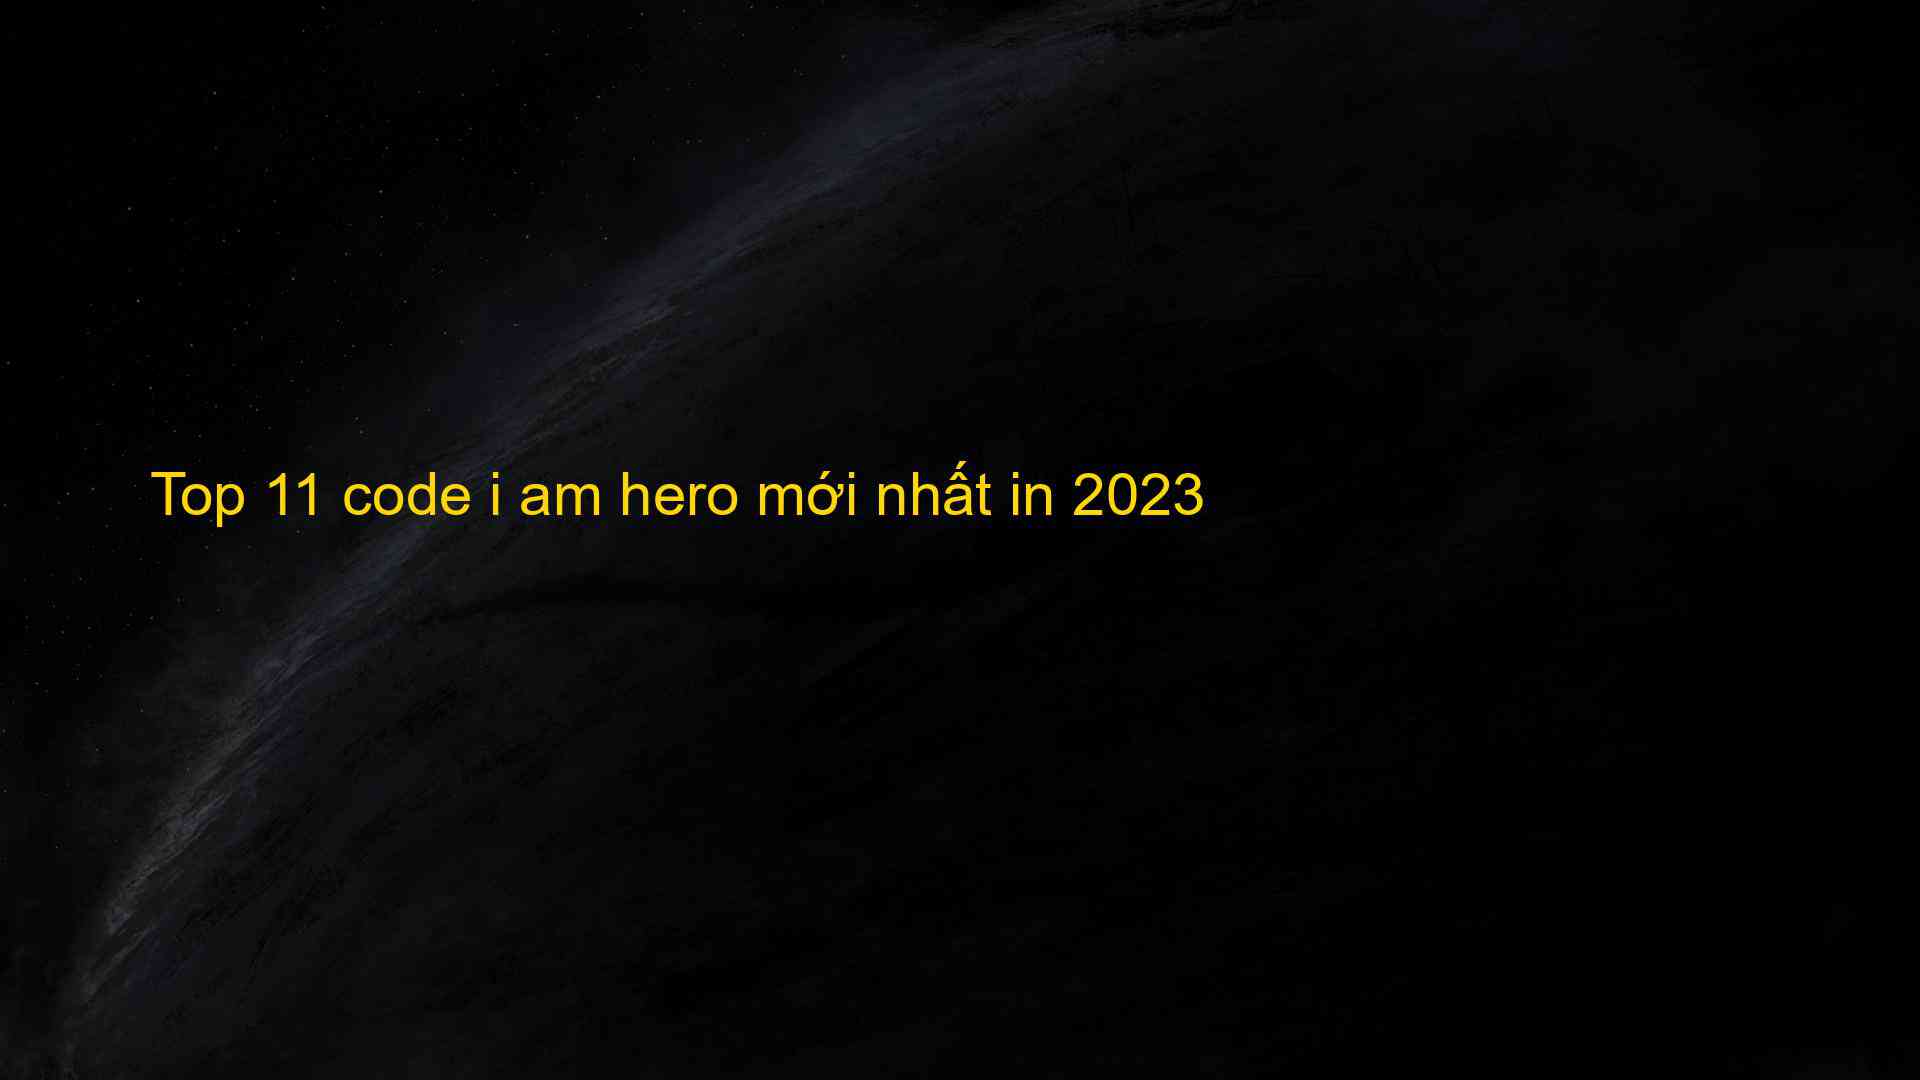 Top 11 Code I Am Hero Mới Nhất In 2023 - Chia Sẻ Kiến Thức Điện Máy Việt Nam